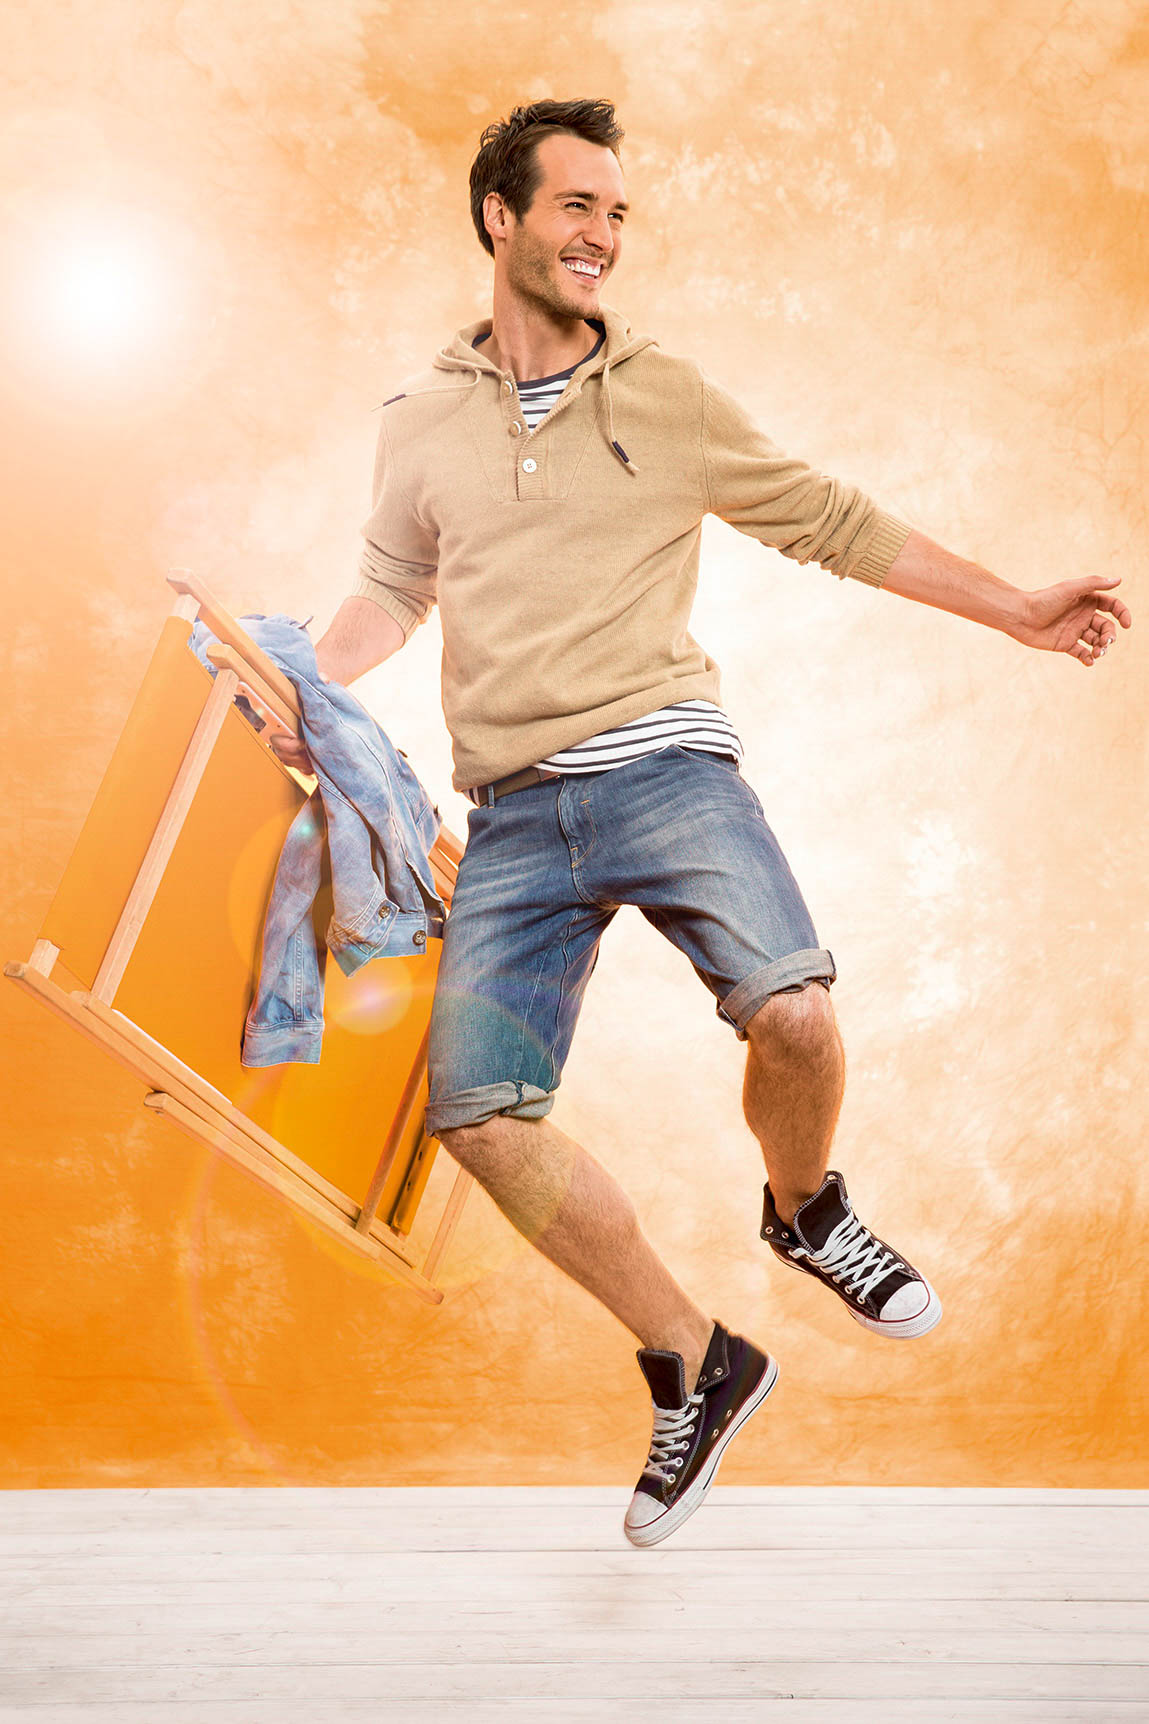 Ein fröhlicher Mann in einem beigen Kapuzenpullover und Jeansshorts springt neben einem orangefarbenen Stuhl herum, über den eine Jeansjacke hängt, vor einem warmen, strukturierten orangefarbenen Hintergrund. © Fotografie Tomas Rodriguez